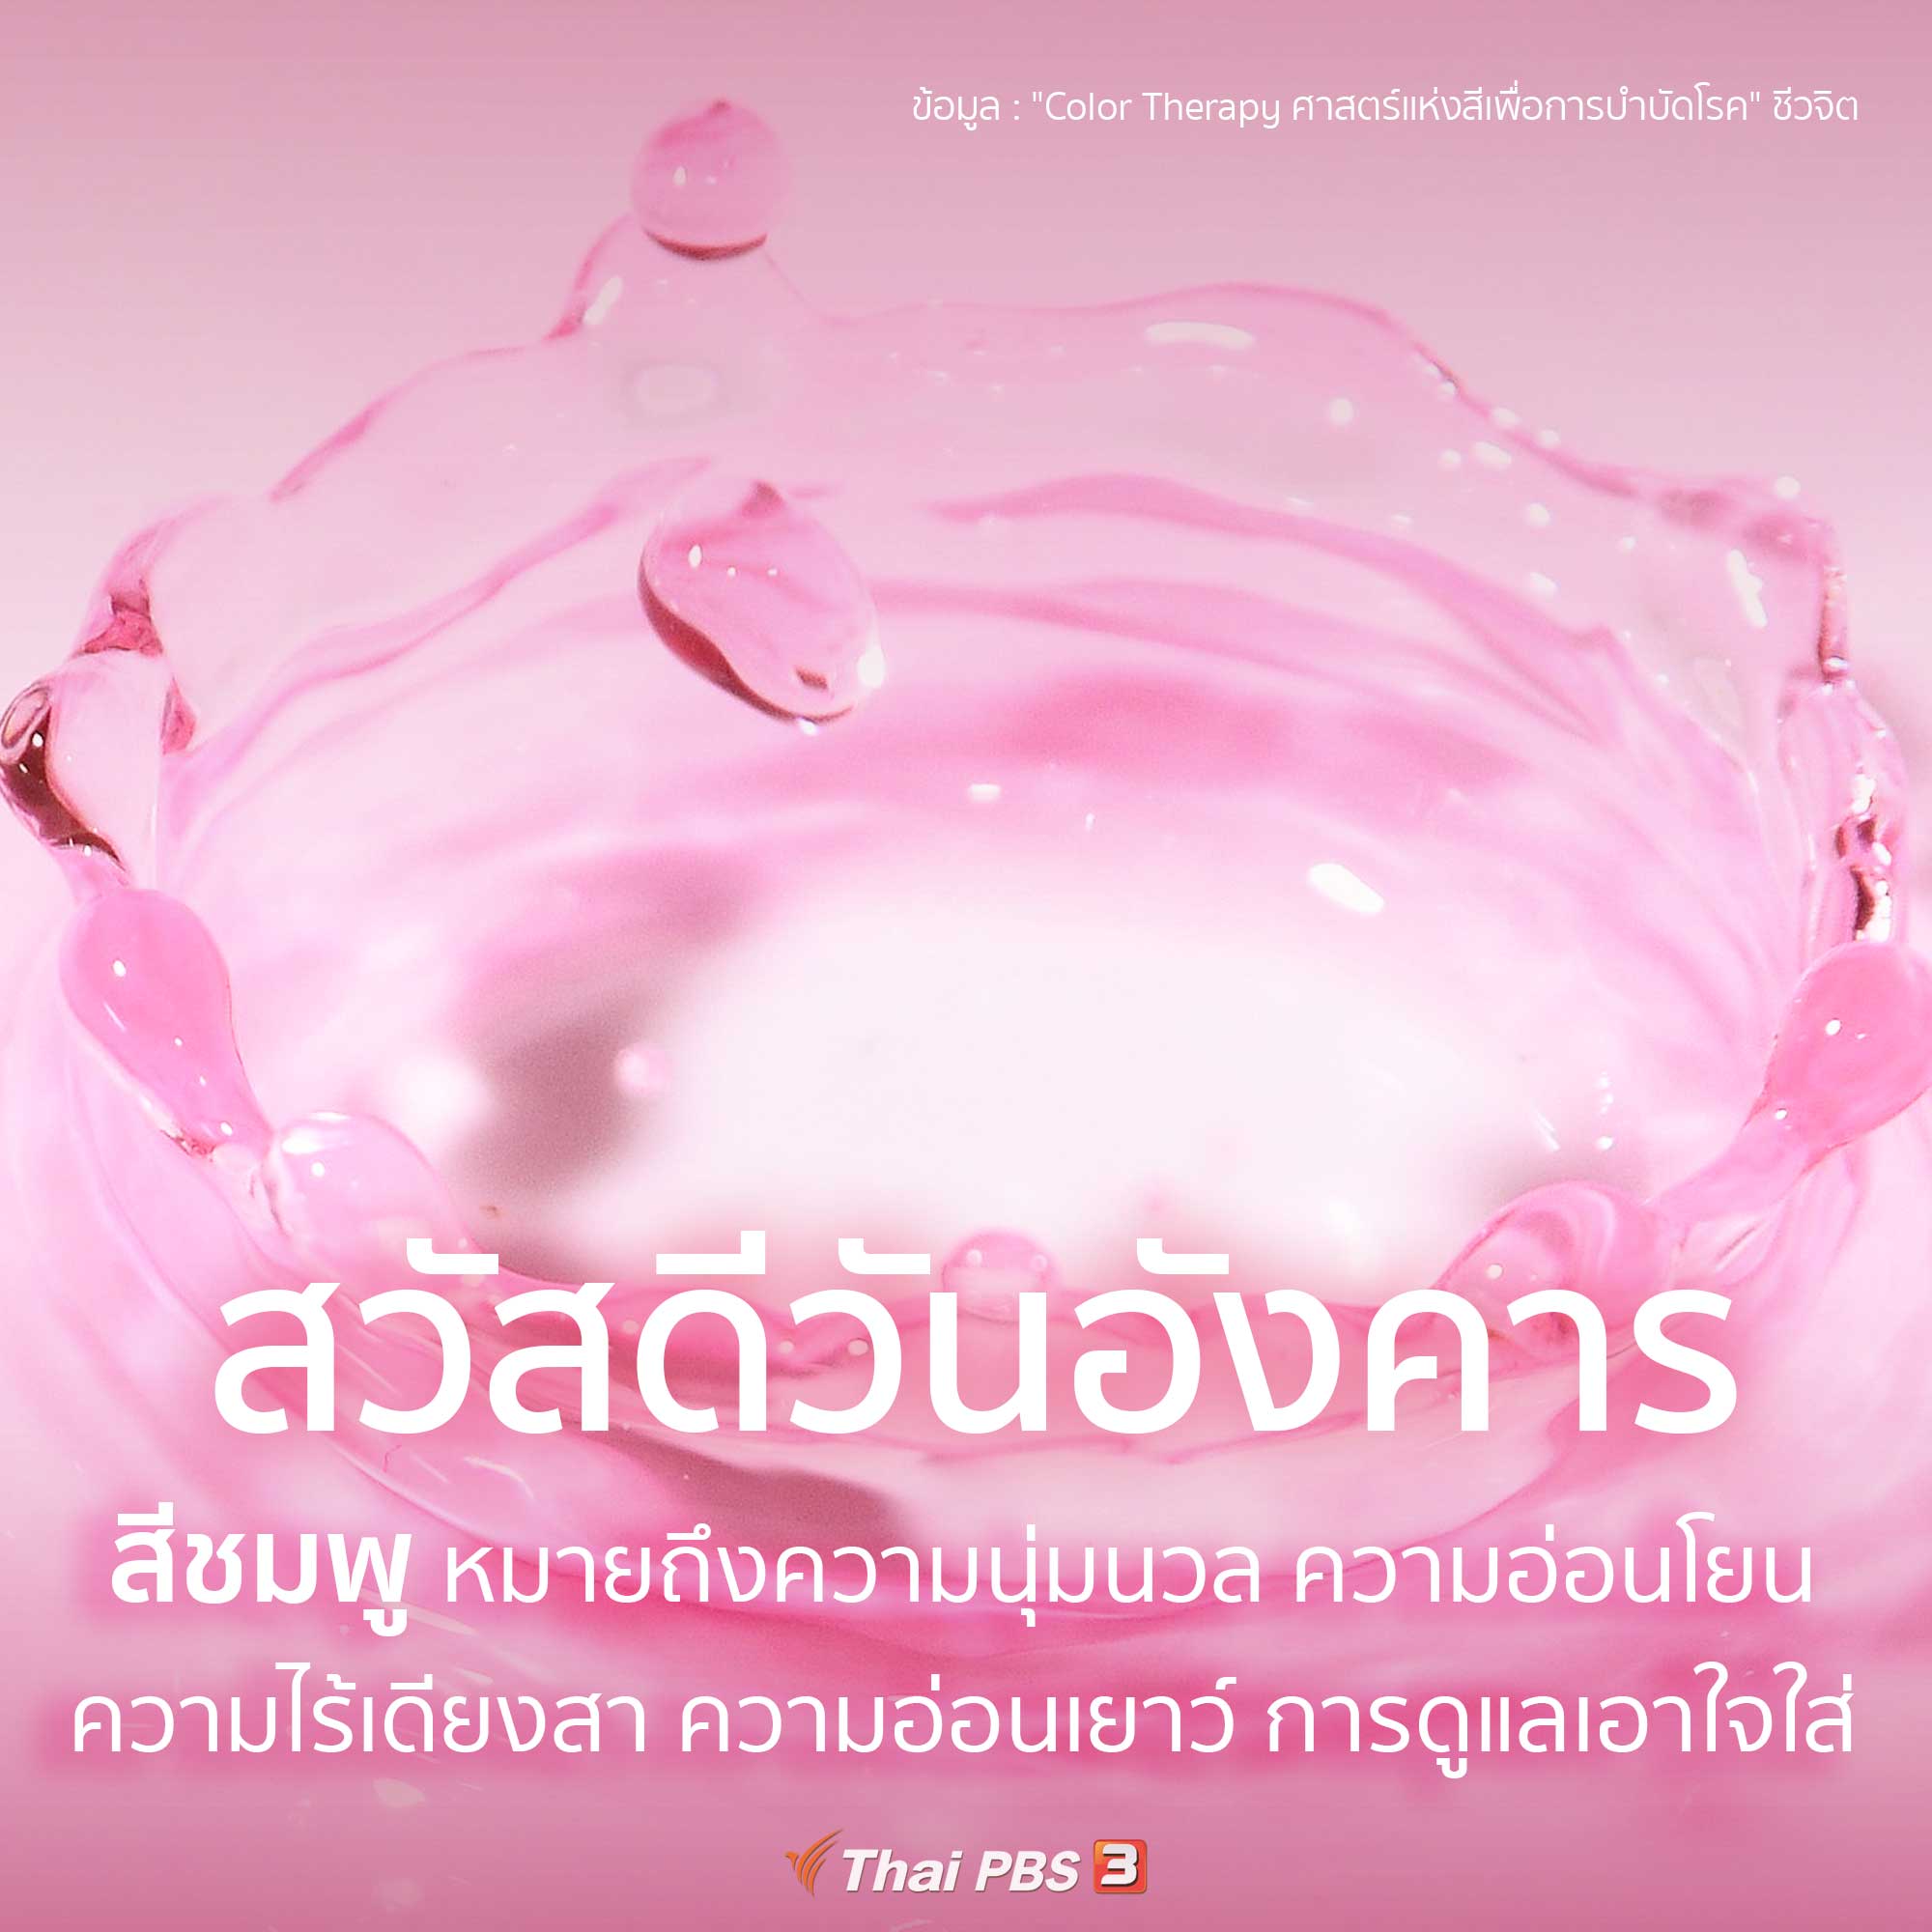 ความหมายของสีชมพู - Thai Pbs สวัสดีทุกสีวัน